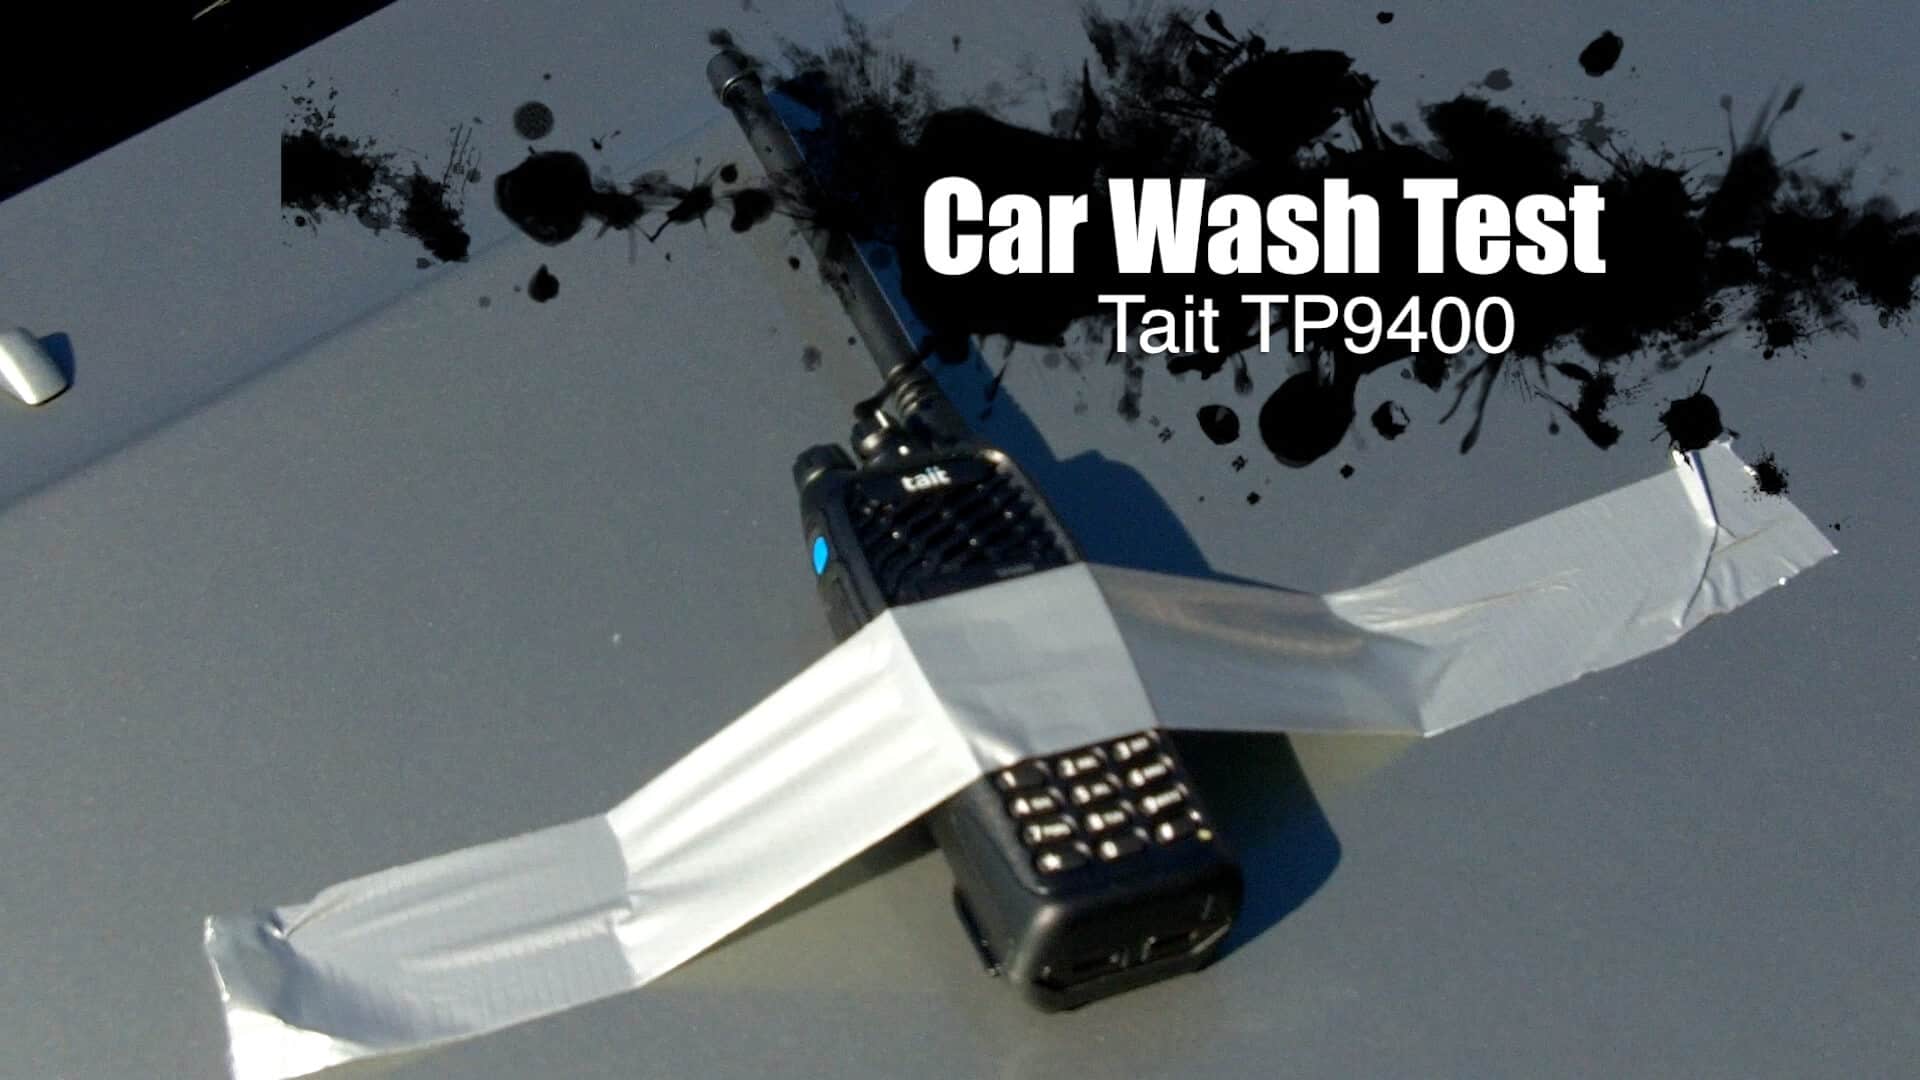 Tait Tough: Carwash test